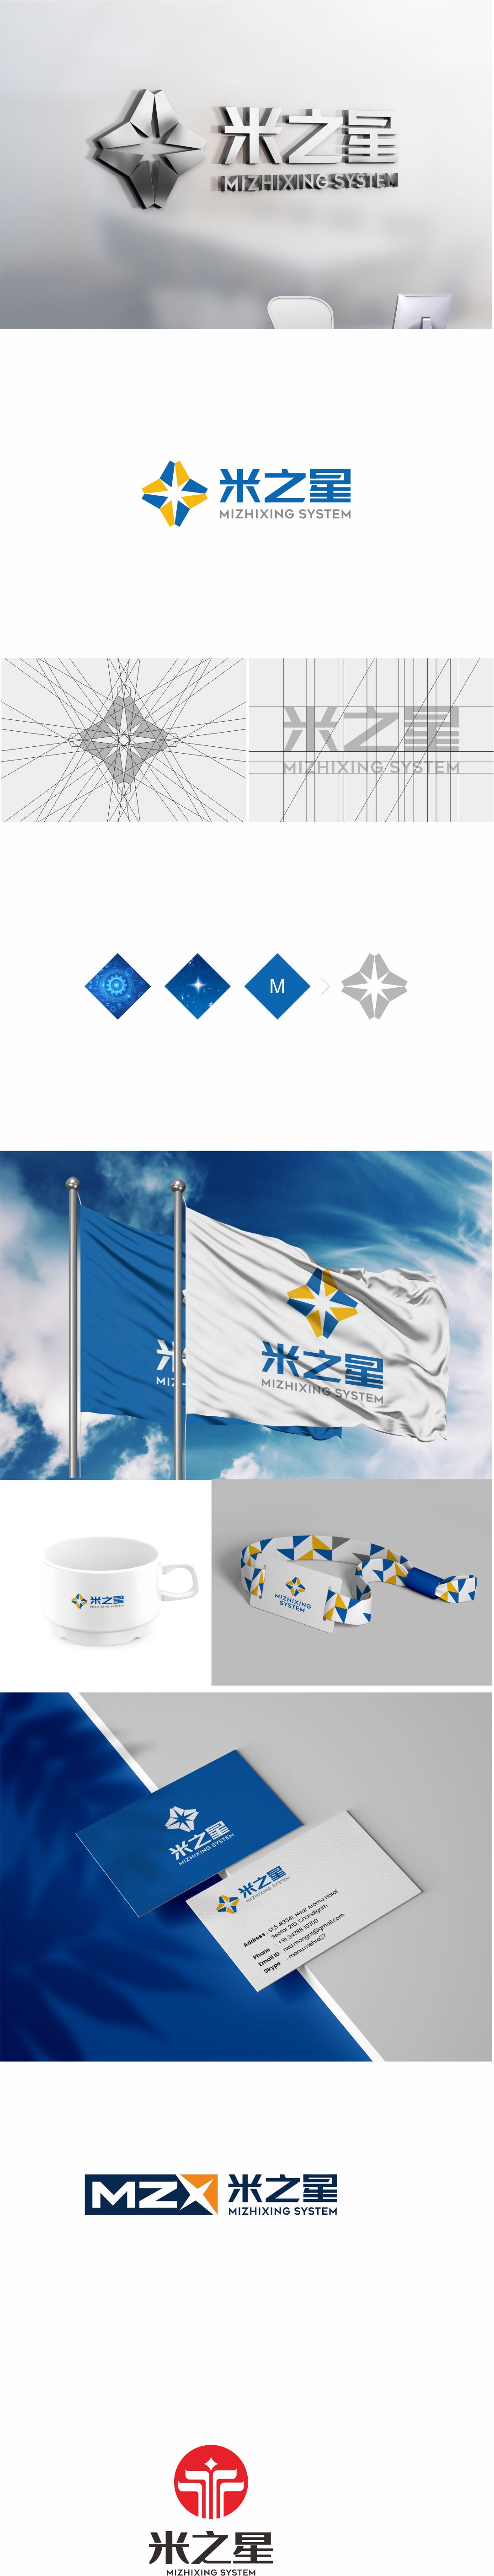 米之星 logo.jpg